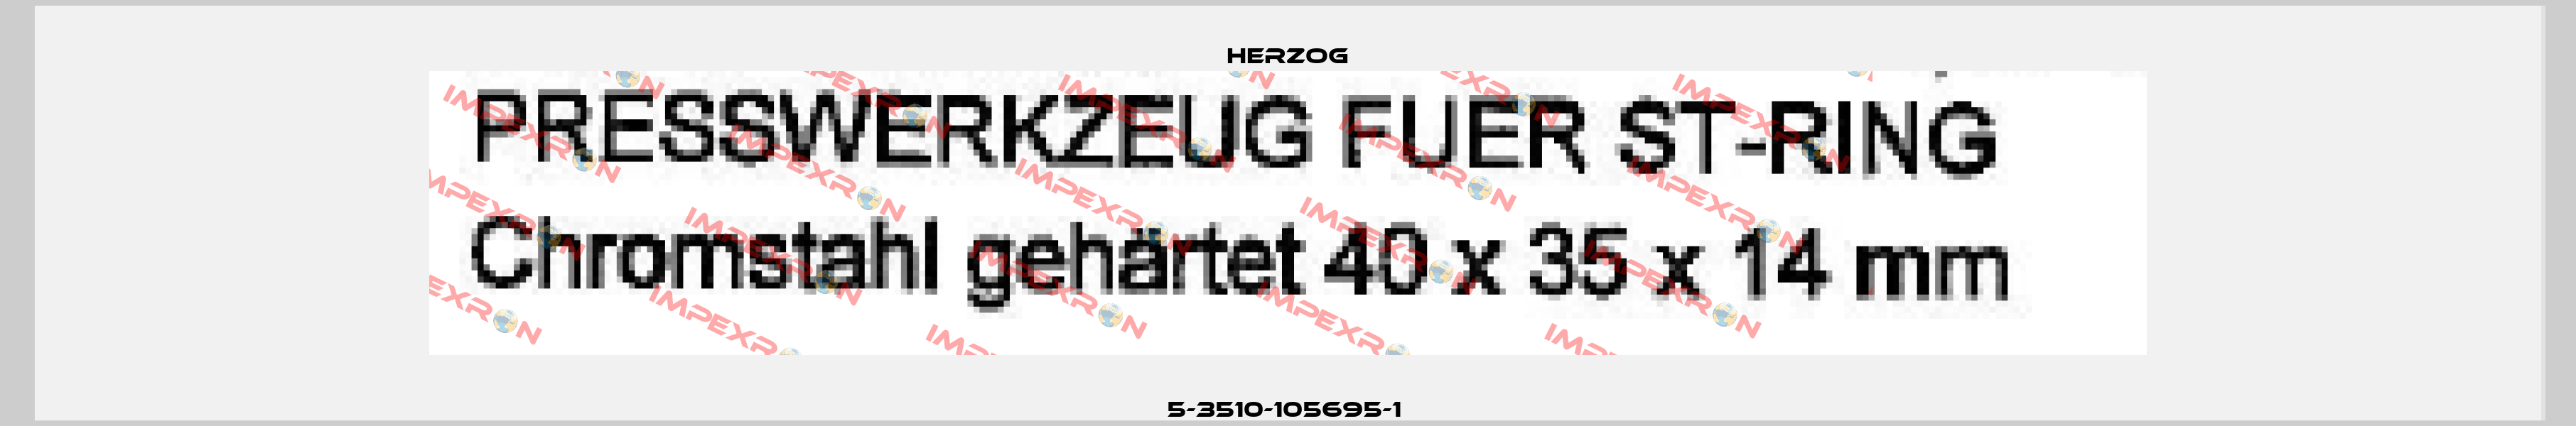 5-3510-105695-1  Herzog